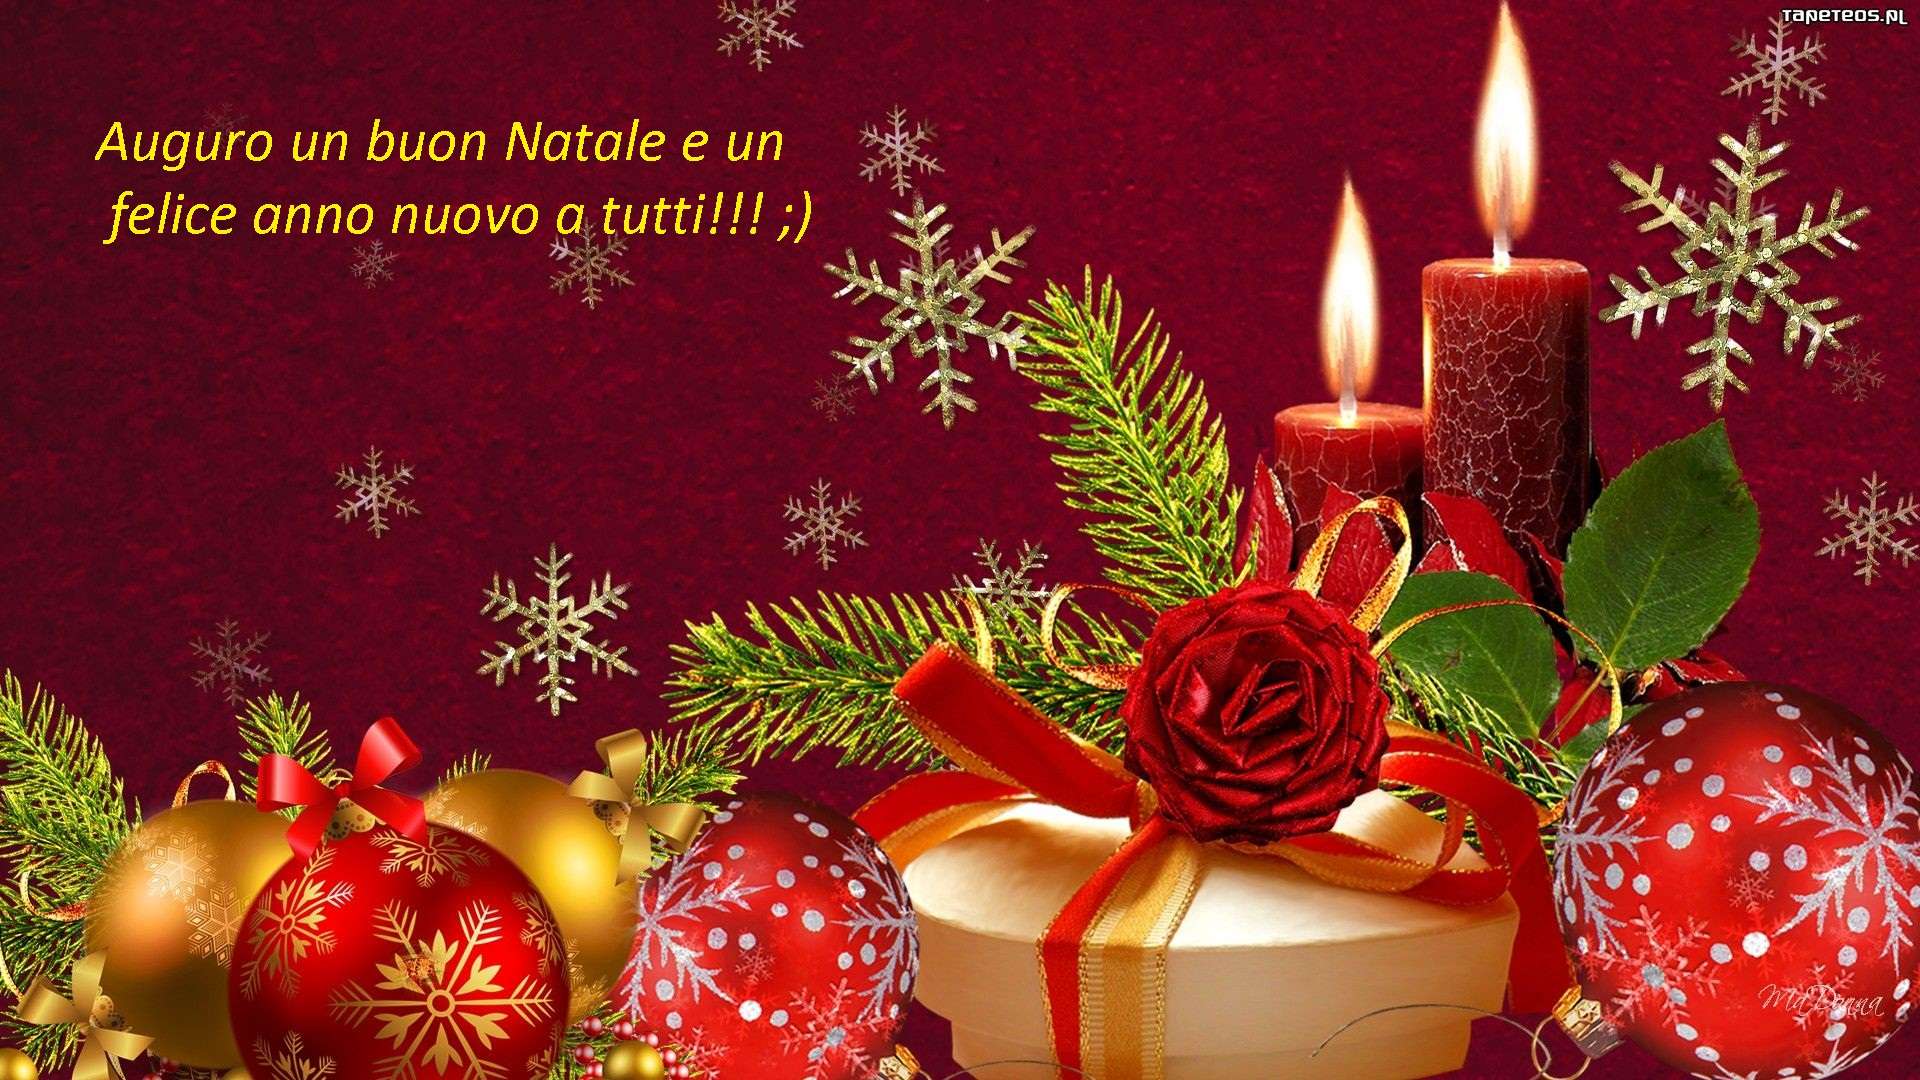 Buon Natale E Felice Anno Nuovo.Auguri Di Buon Natale E Felice Anno Nuovo Baronerosso It Forum Modellismo